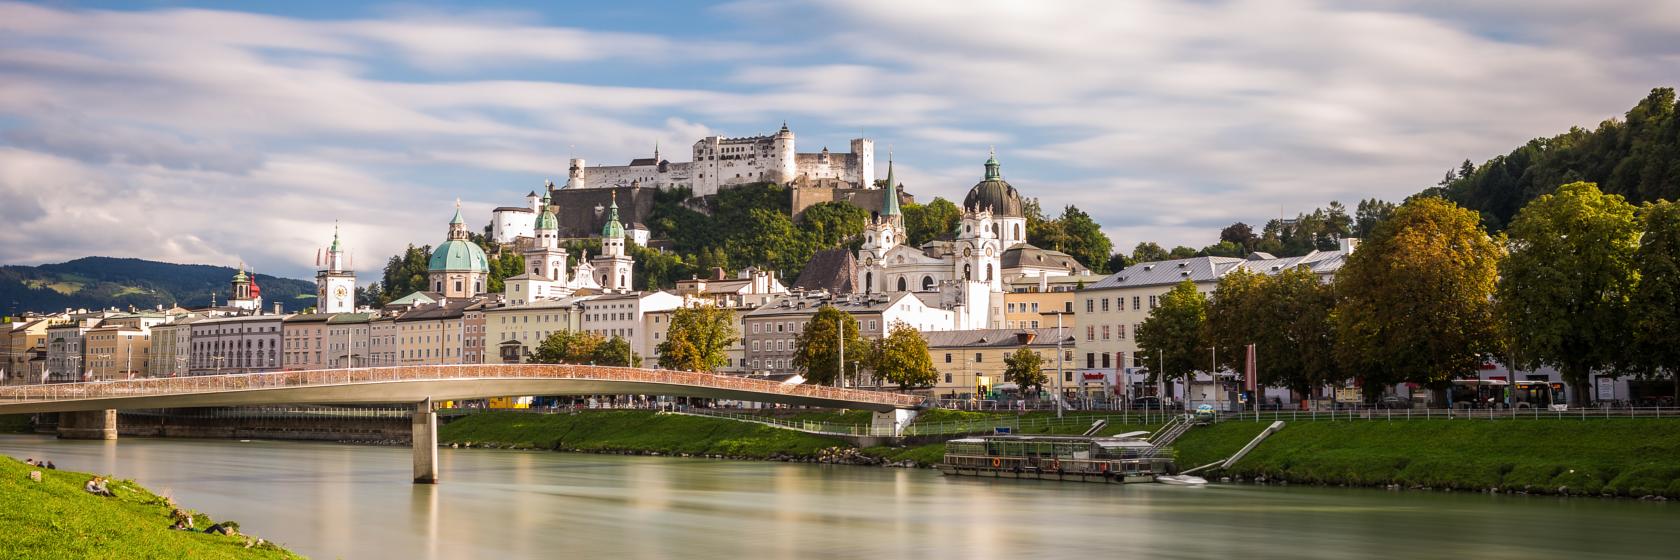 Salzburg, Salzburg Hotels & Accommodation